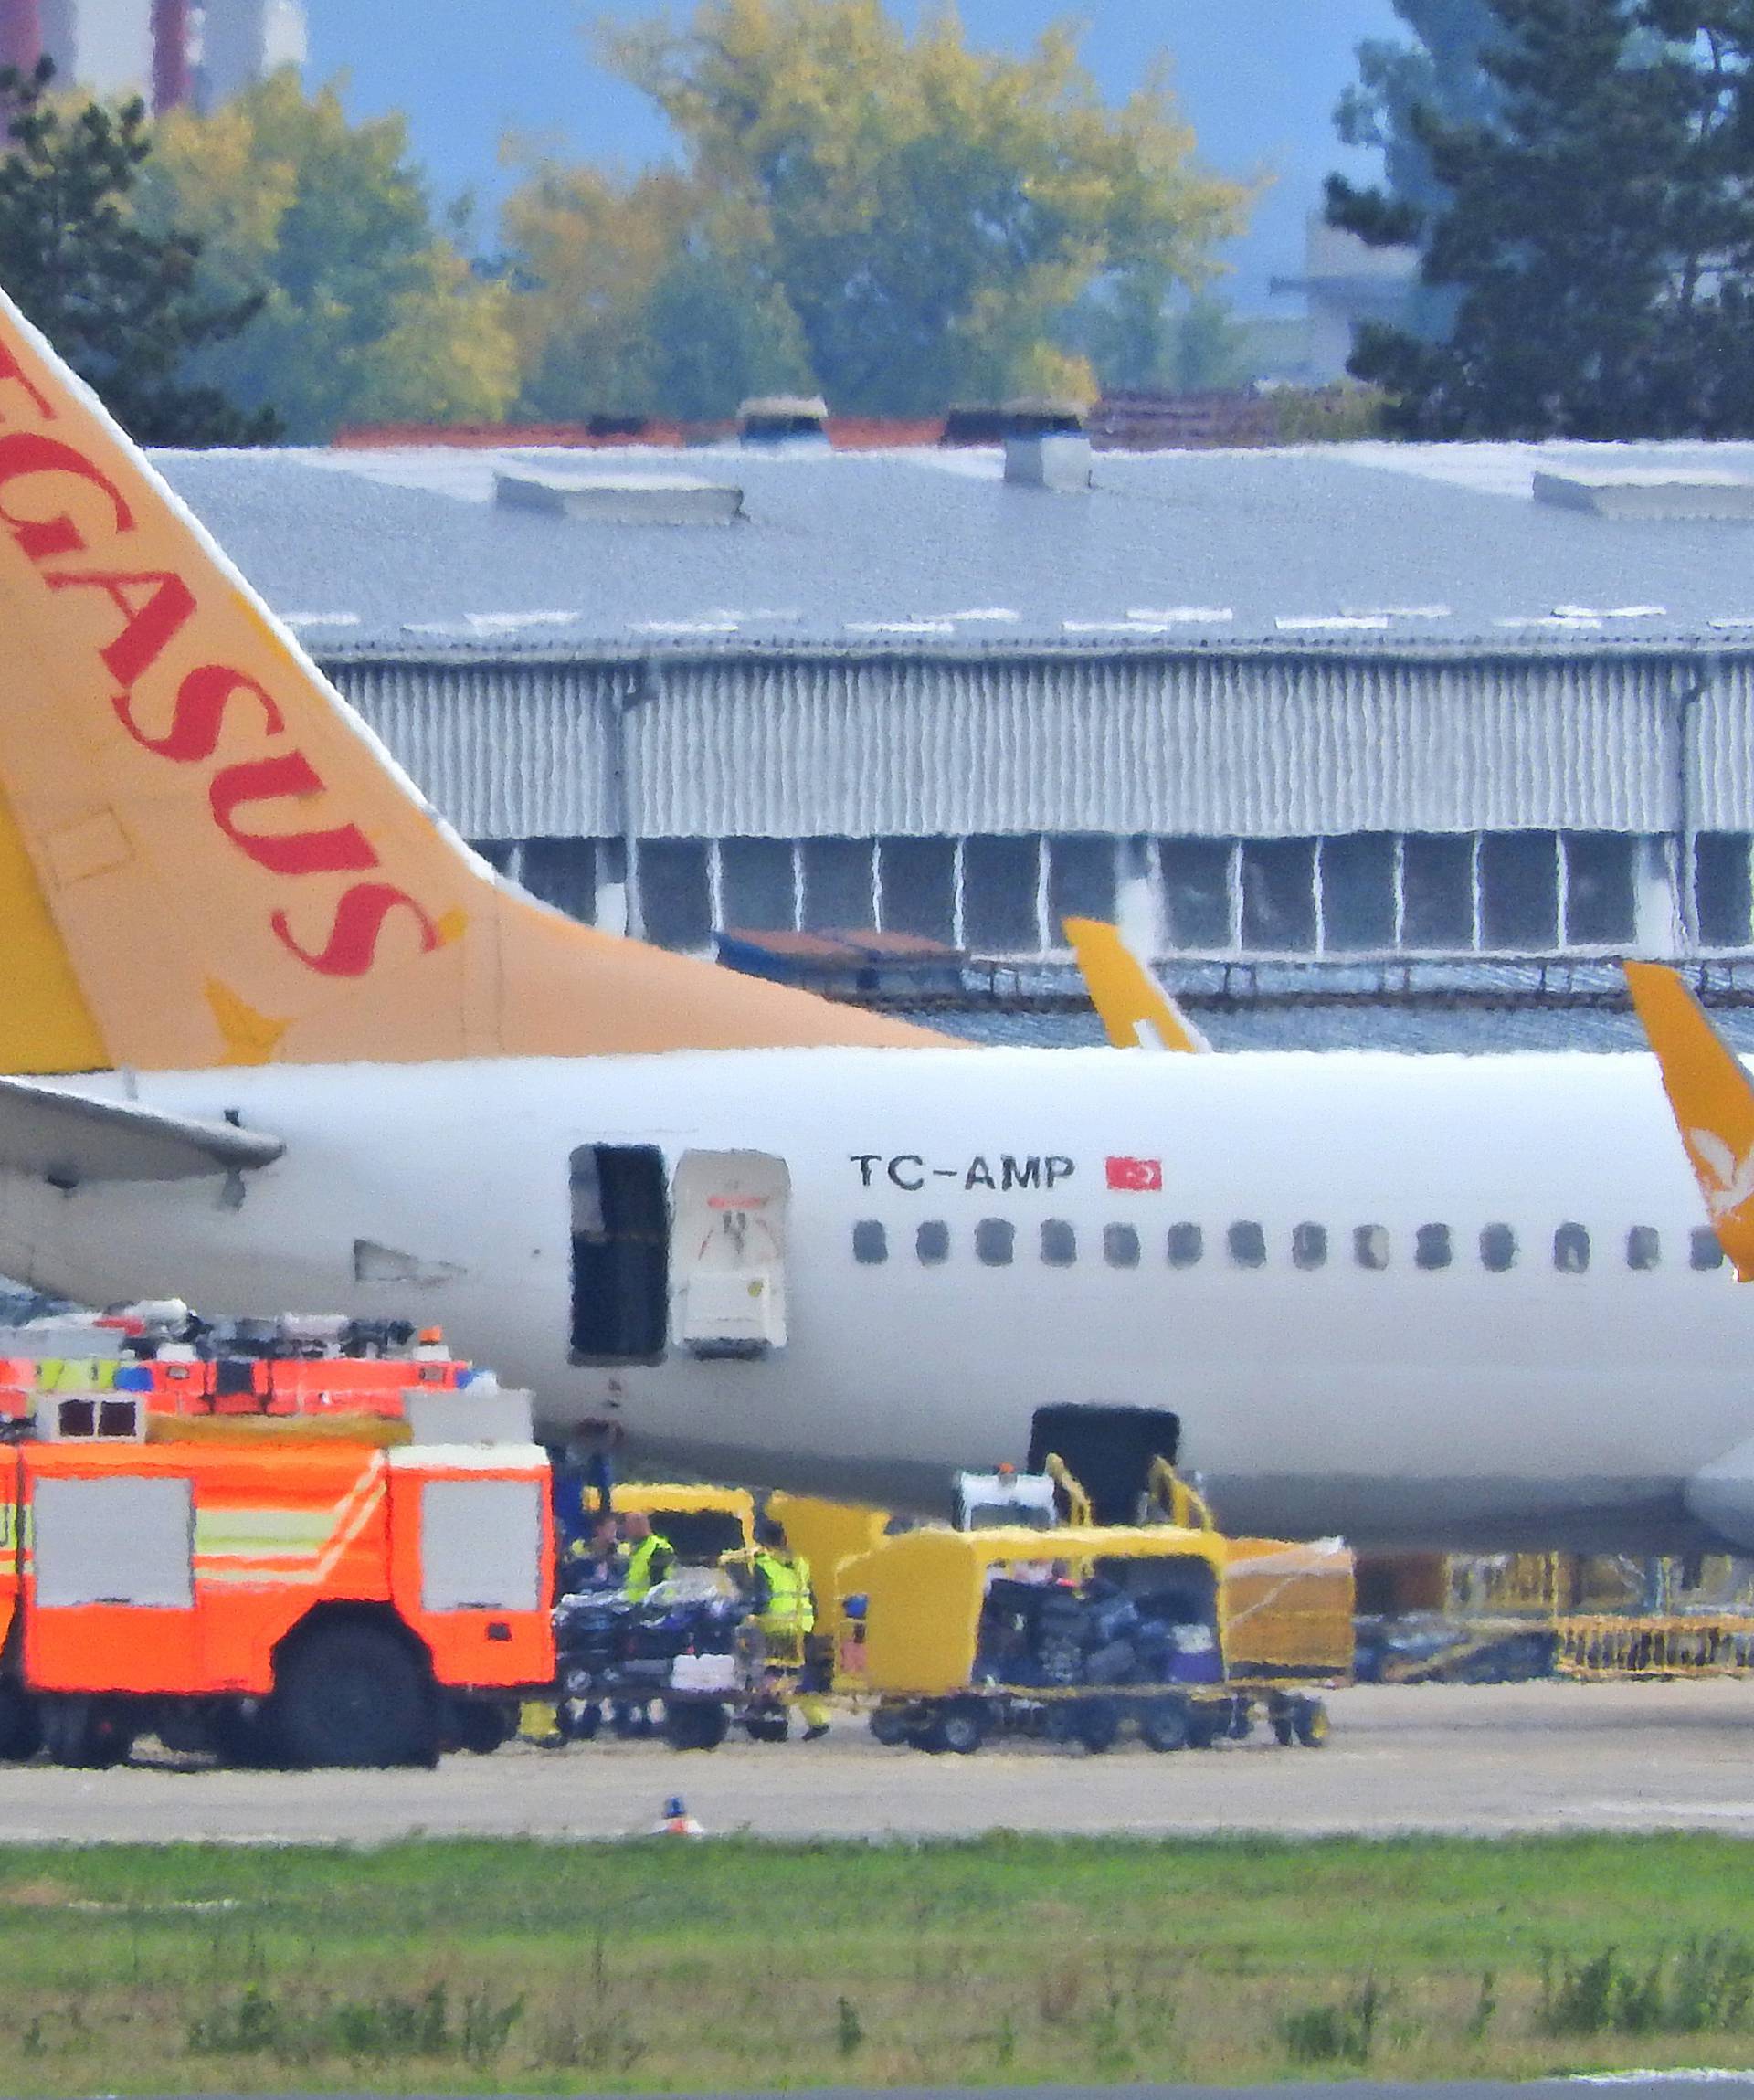 Avion sletio zbog e-cigarete: Zapalila se u prtljazi putnika